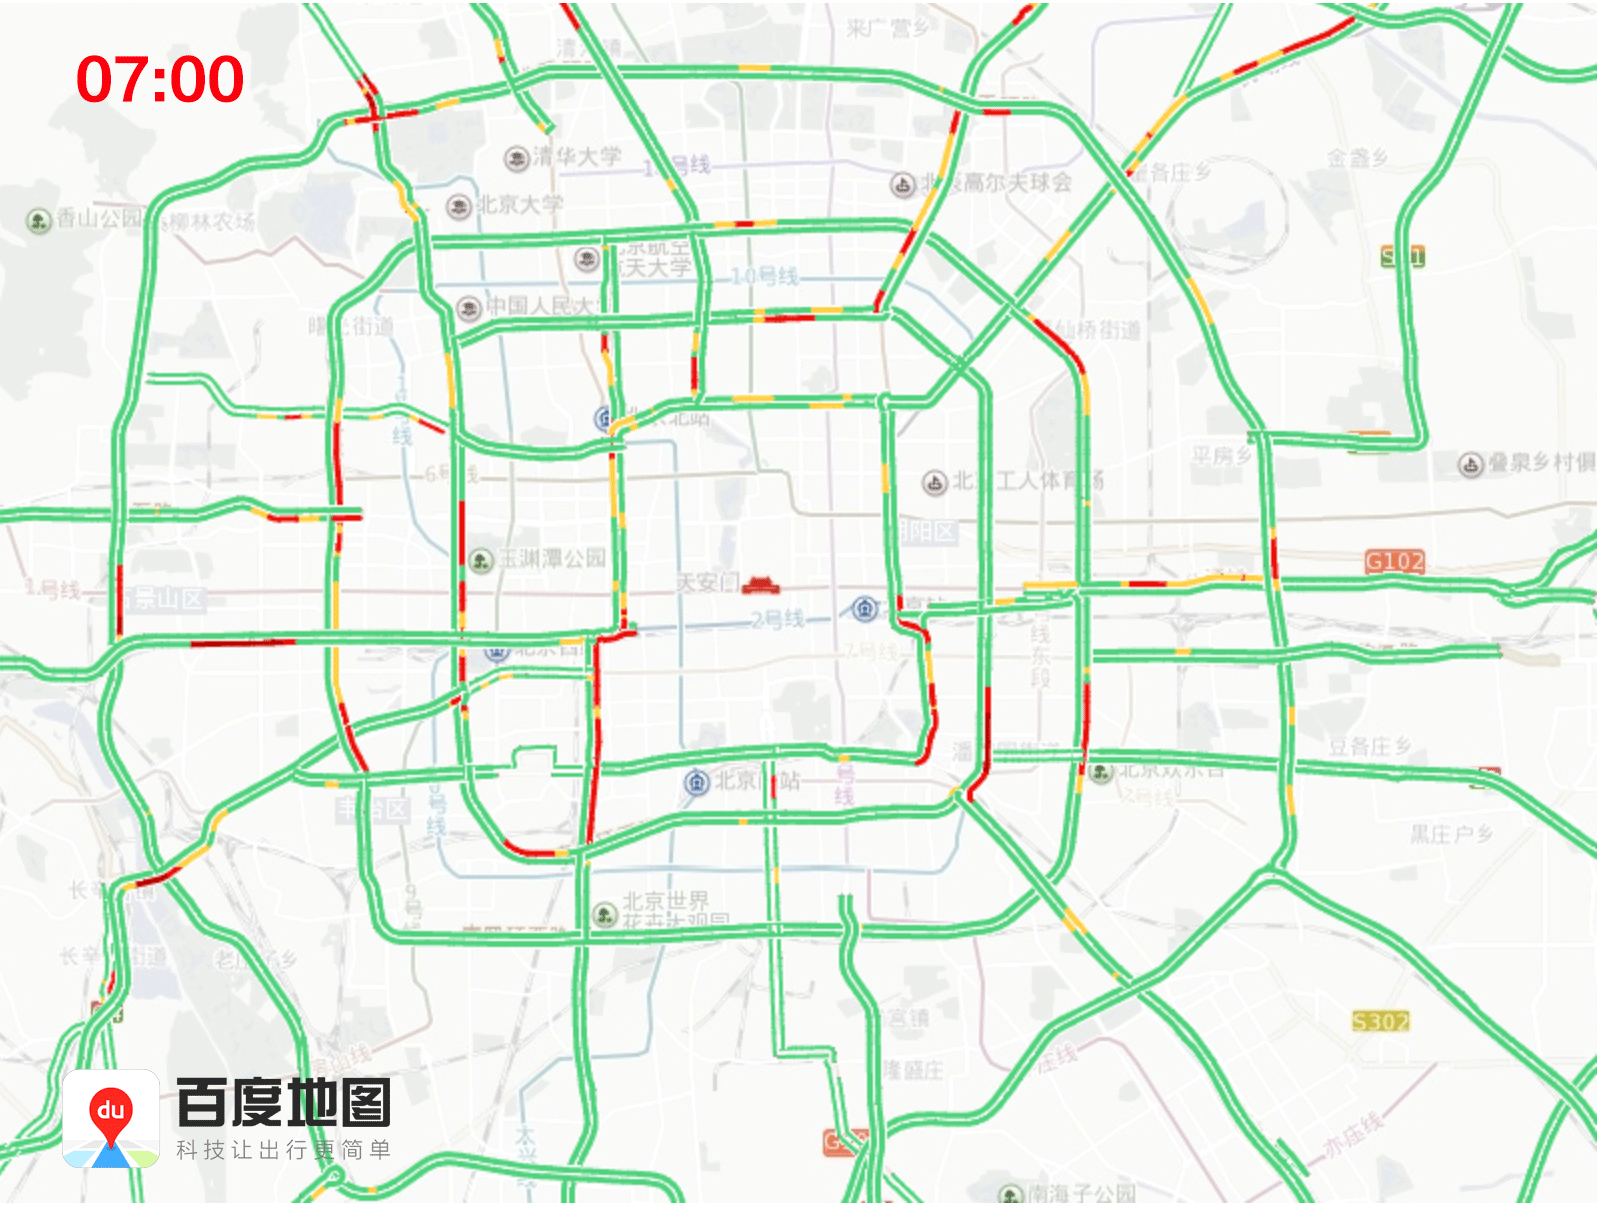 2019年1月19日至1月25日一周北京交通出行提示